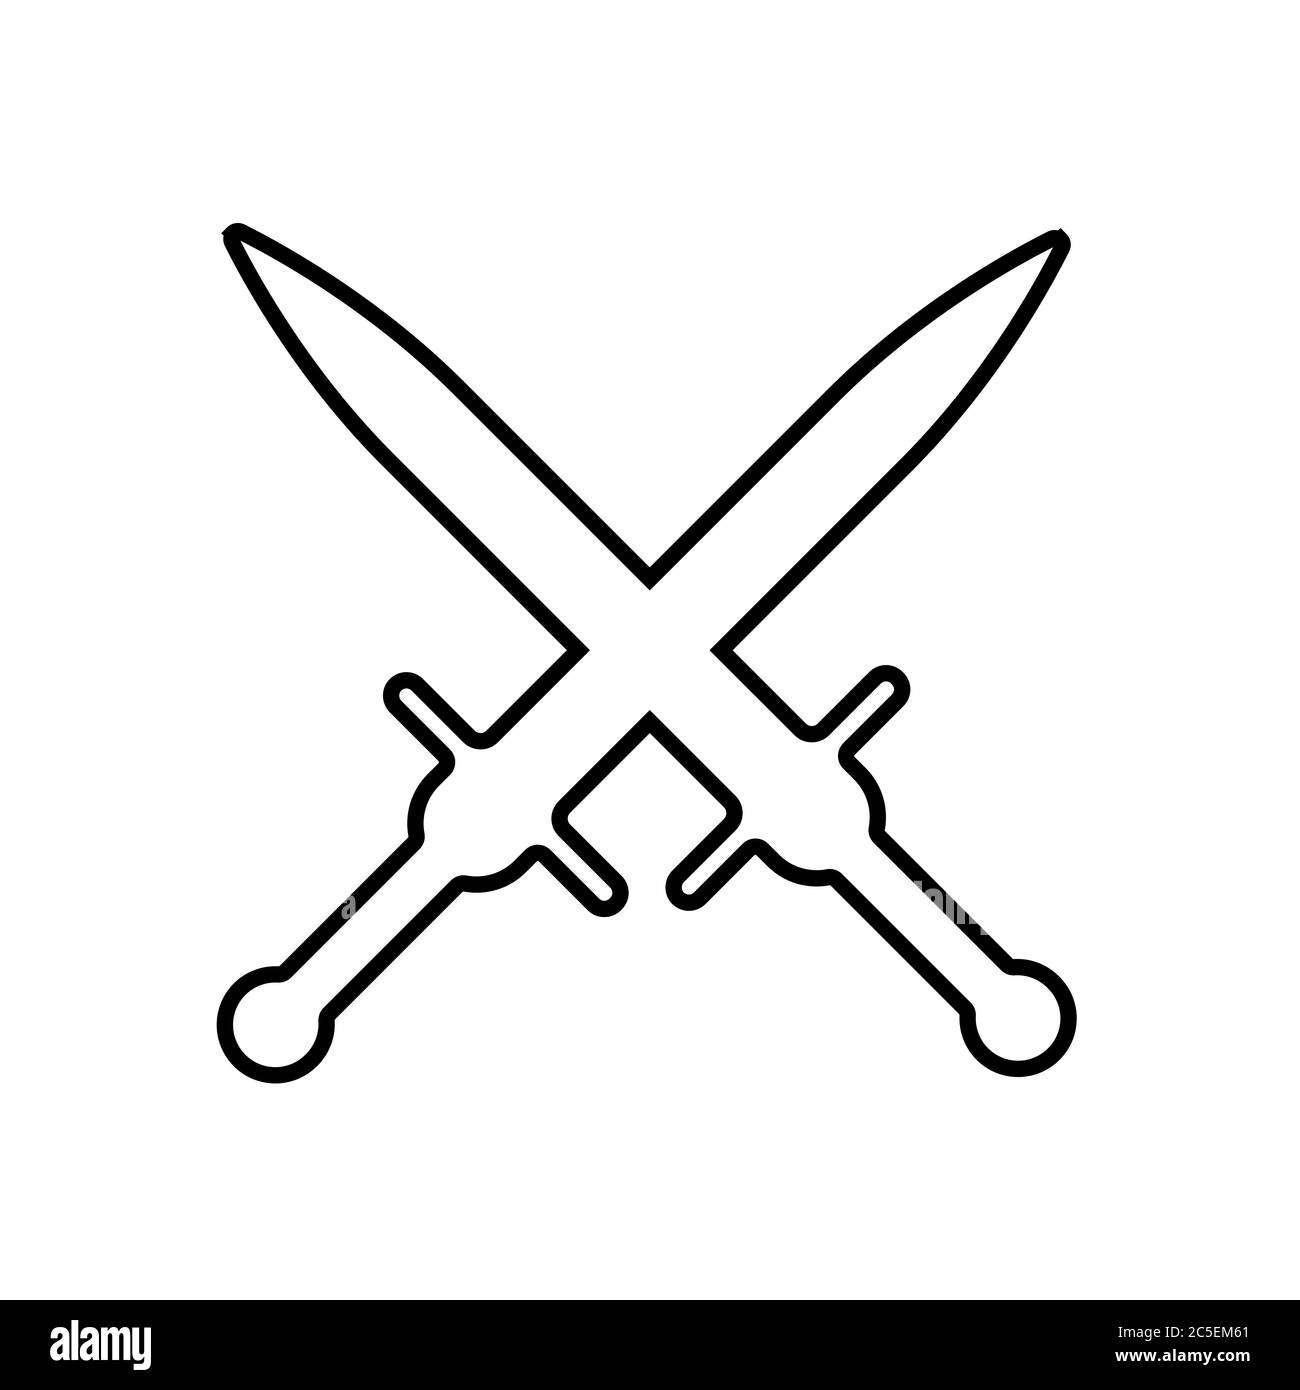 Schwert Symbol auf weißem Hintergrund. Eine Art Nahkampfwaffe mit direkter  Klinge, die zum Schneiden und Durchstechen von Schlägen entwickelt wurde.  EPS 10 Stock-Vektorgrafik - Alamy